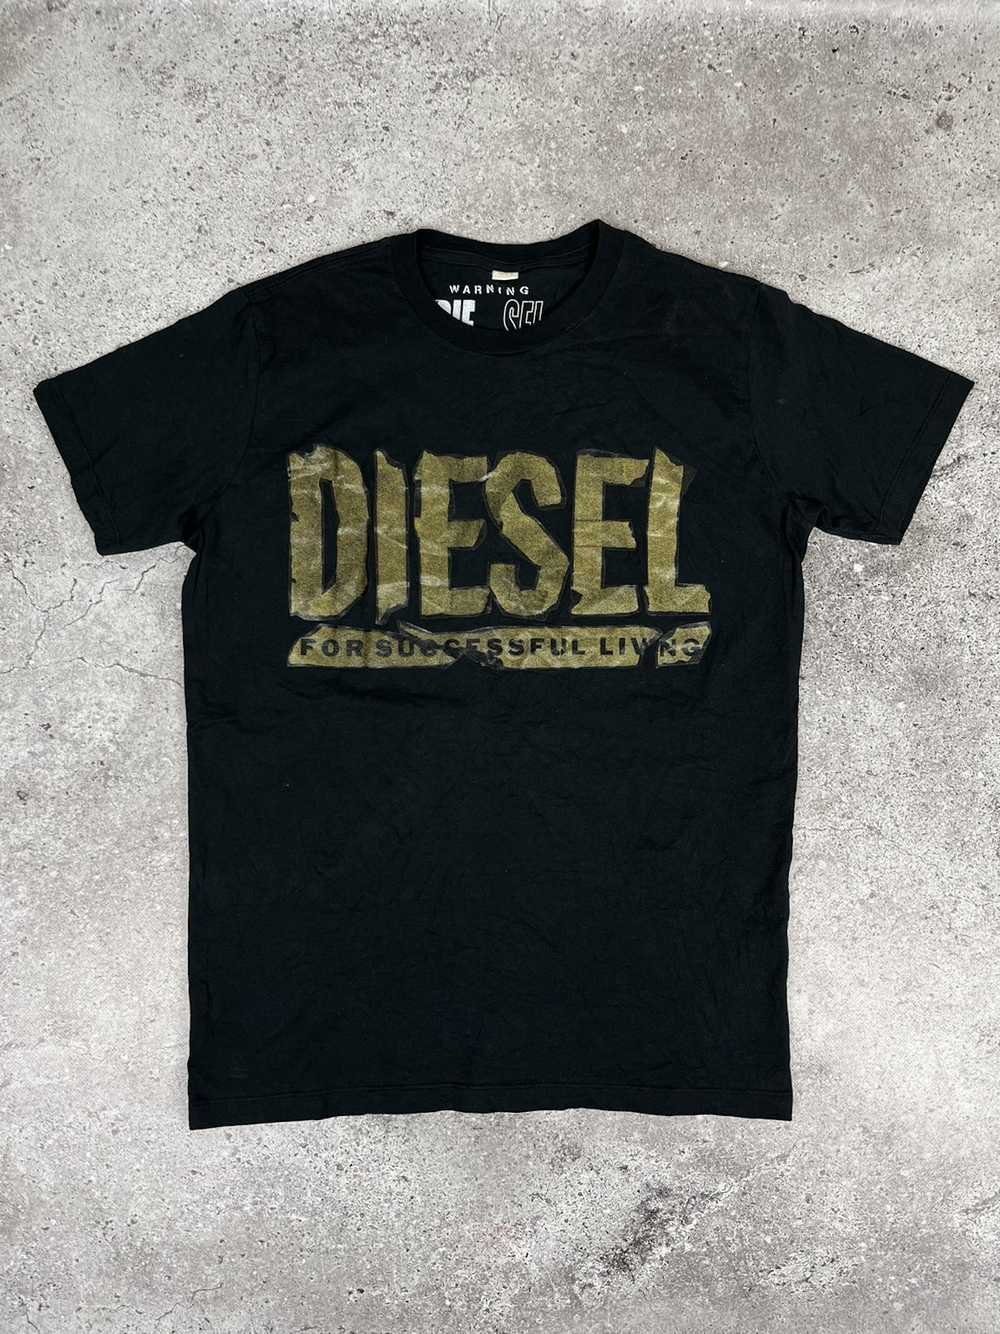 Diesel × Streetwear × Vintage Diesel Vintage 00s … - image 1